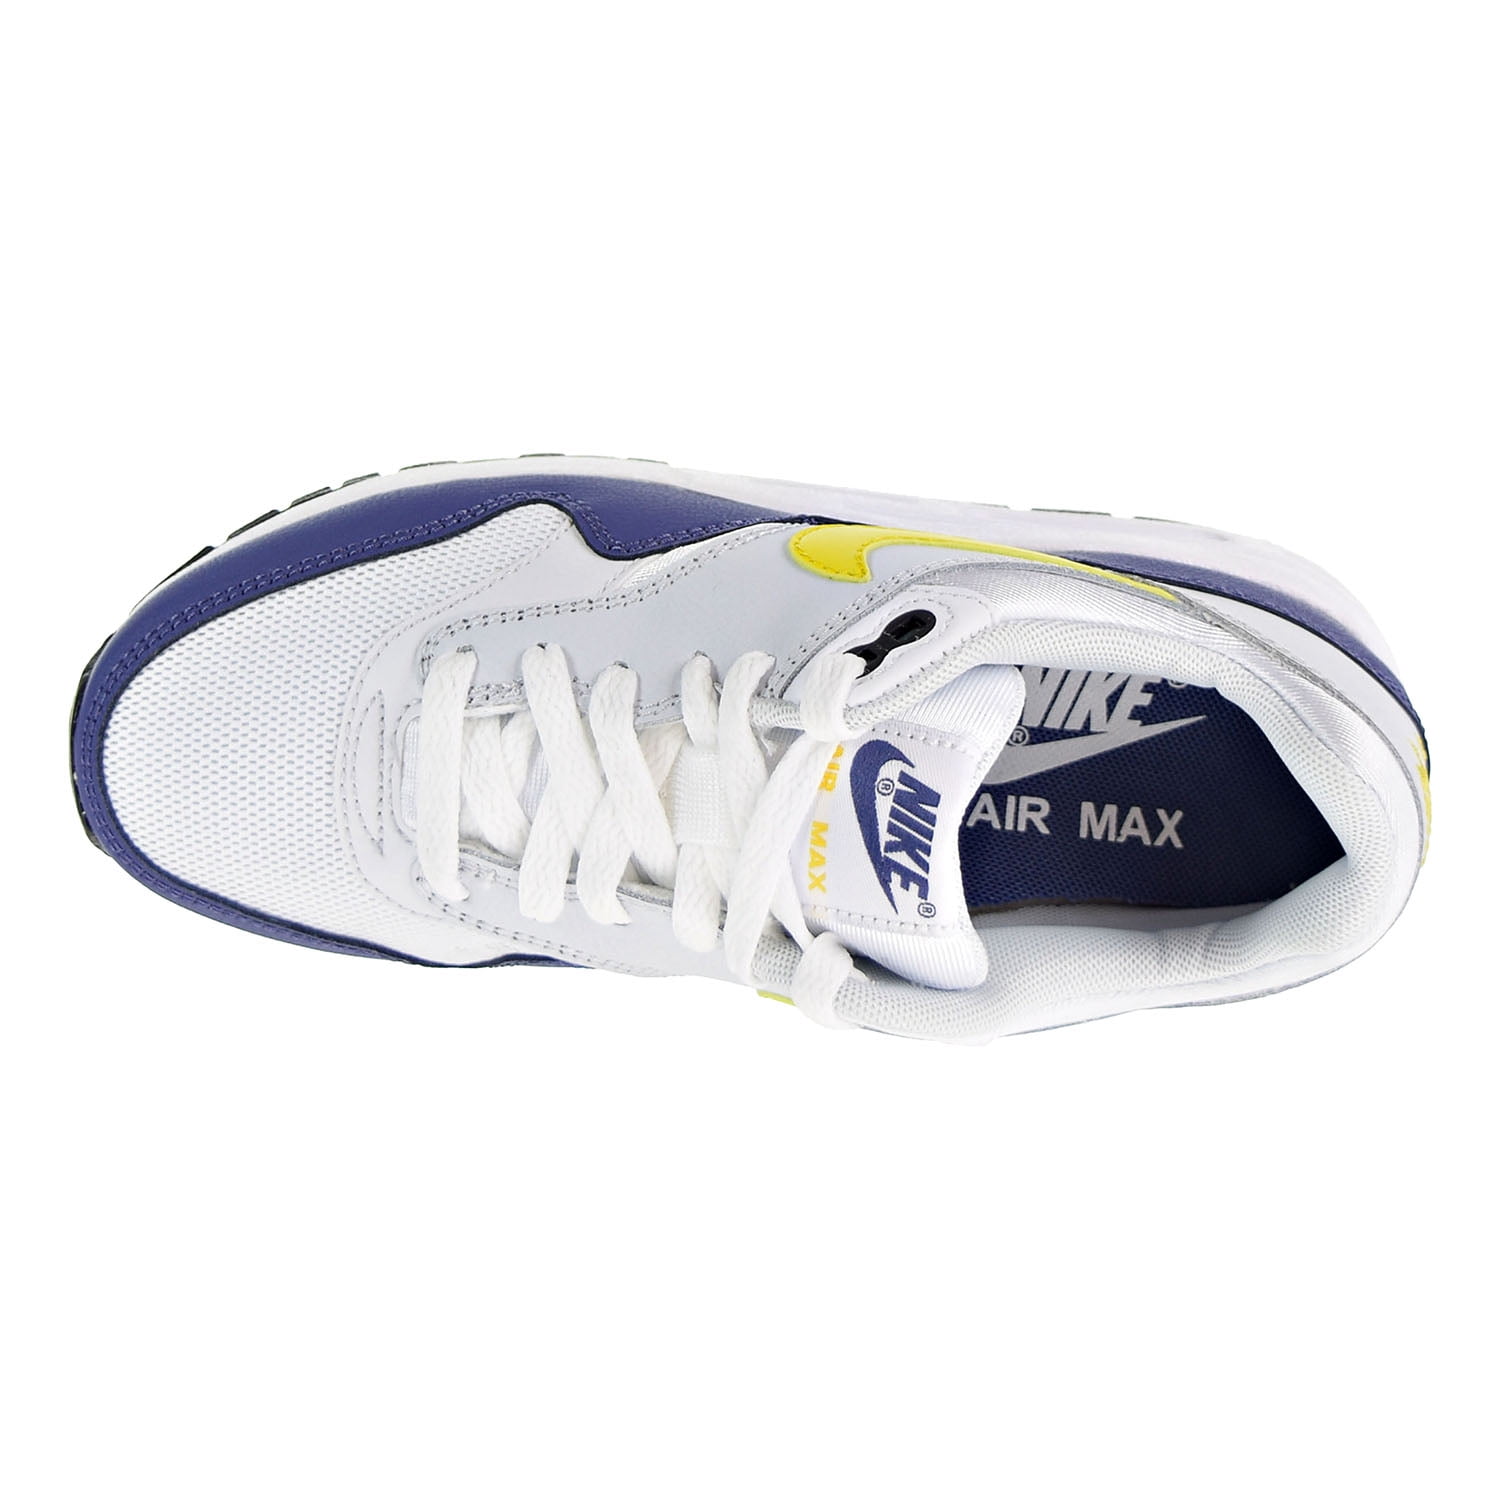 Original Kids Nike Air Max 1 (GS) White Blue Trainers 555766-147